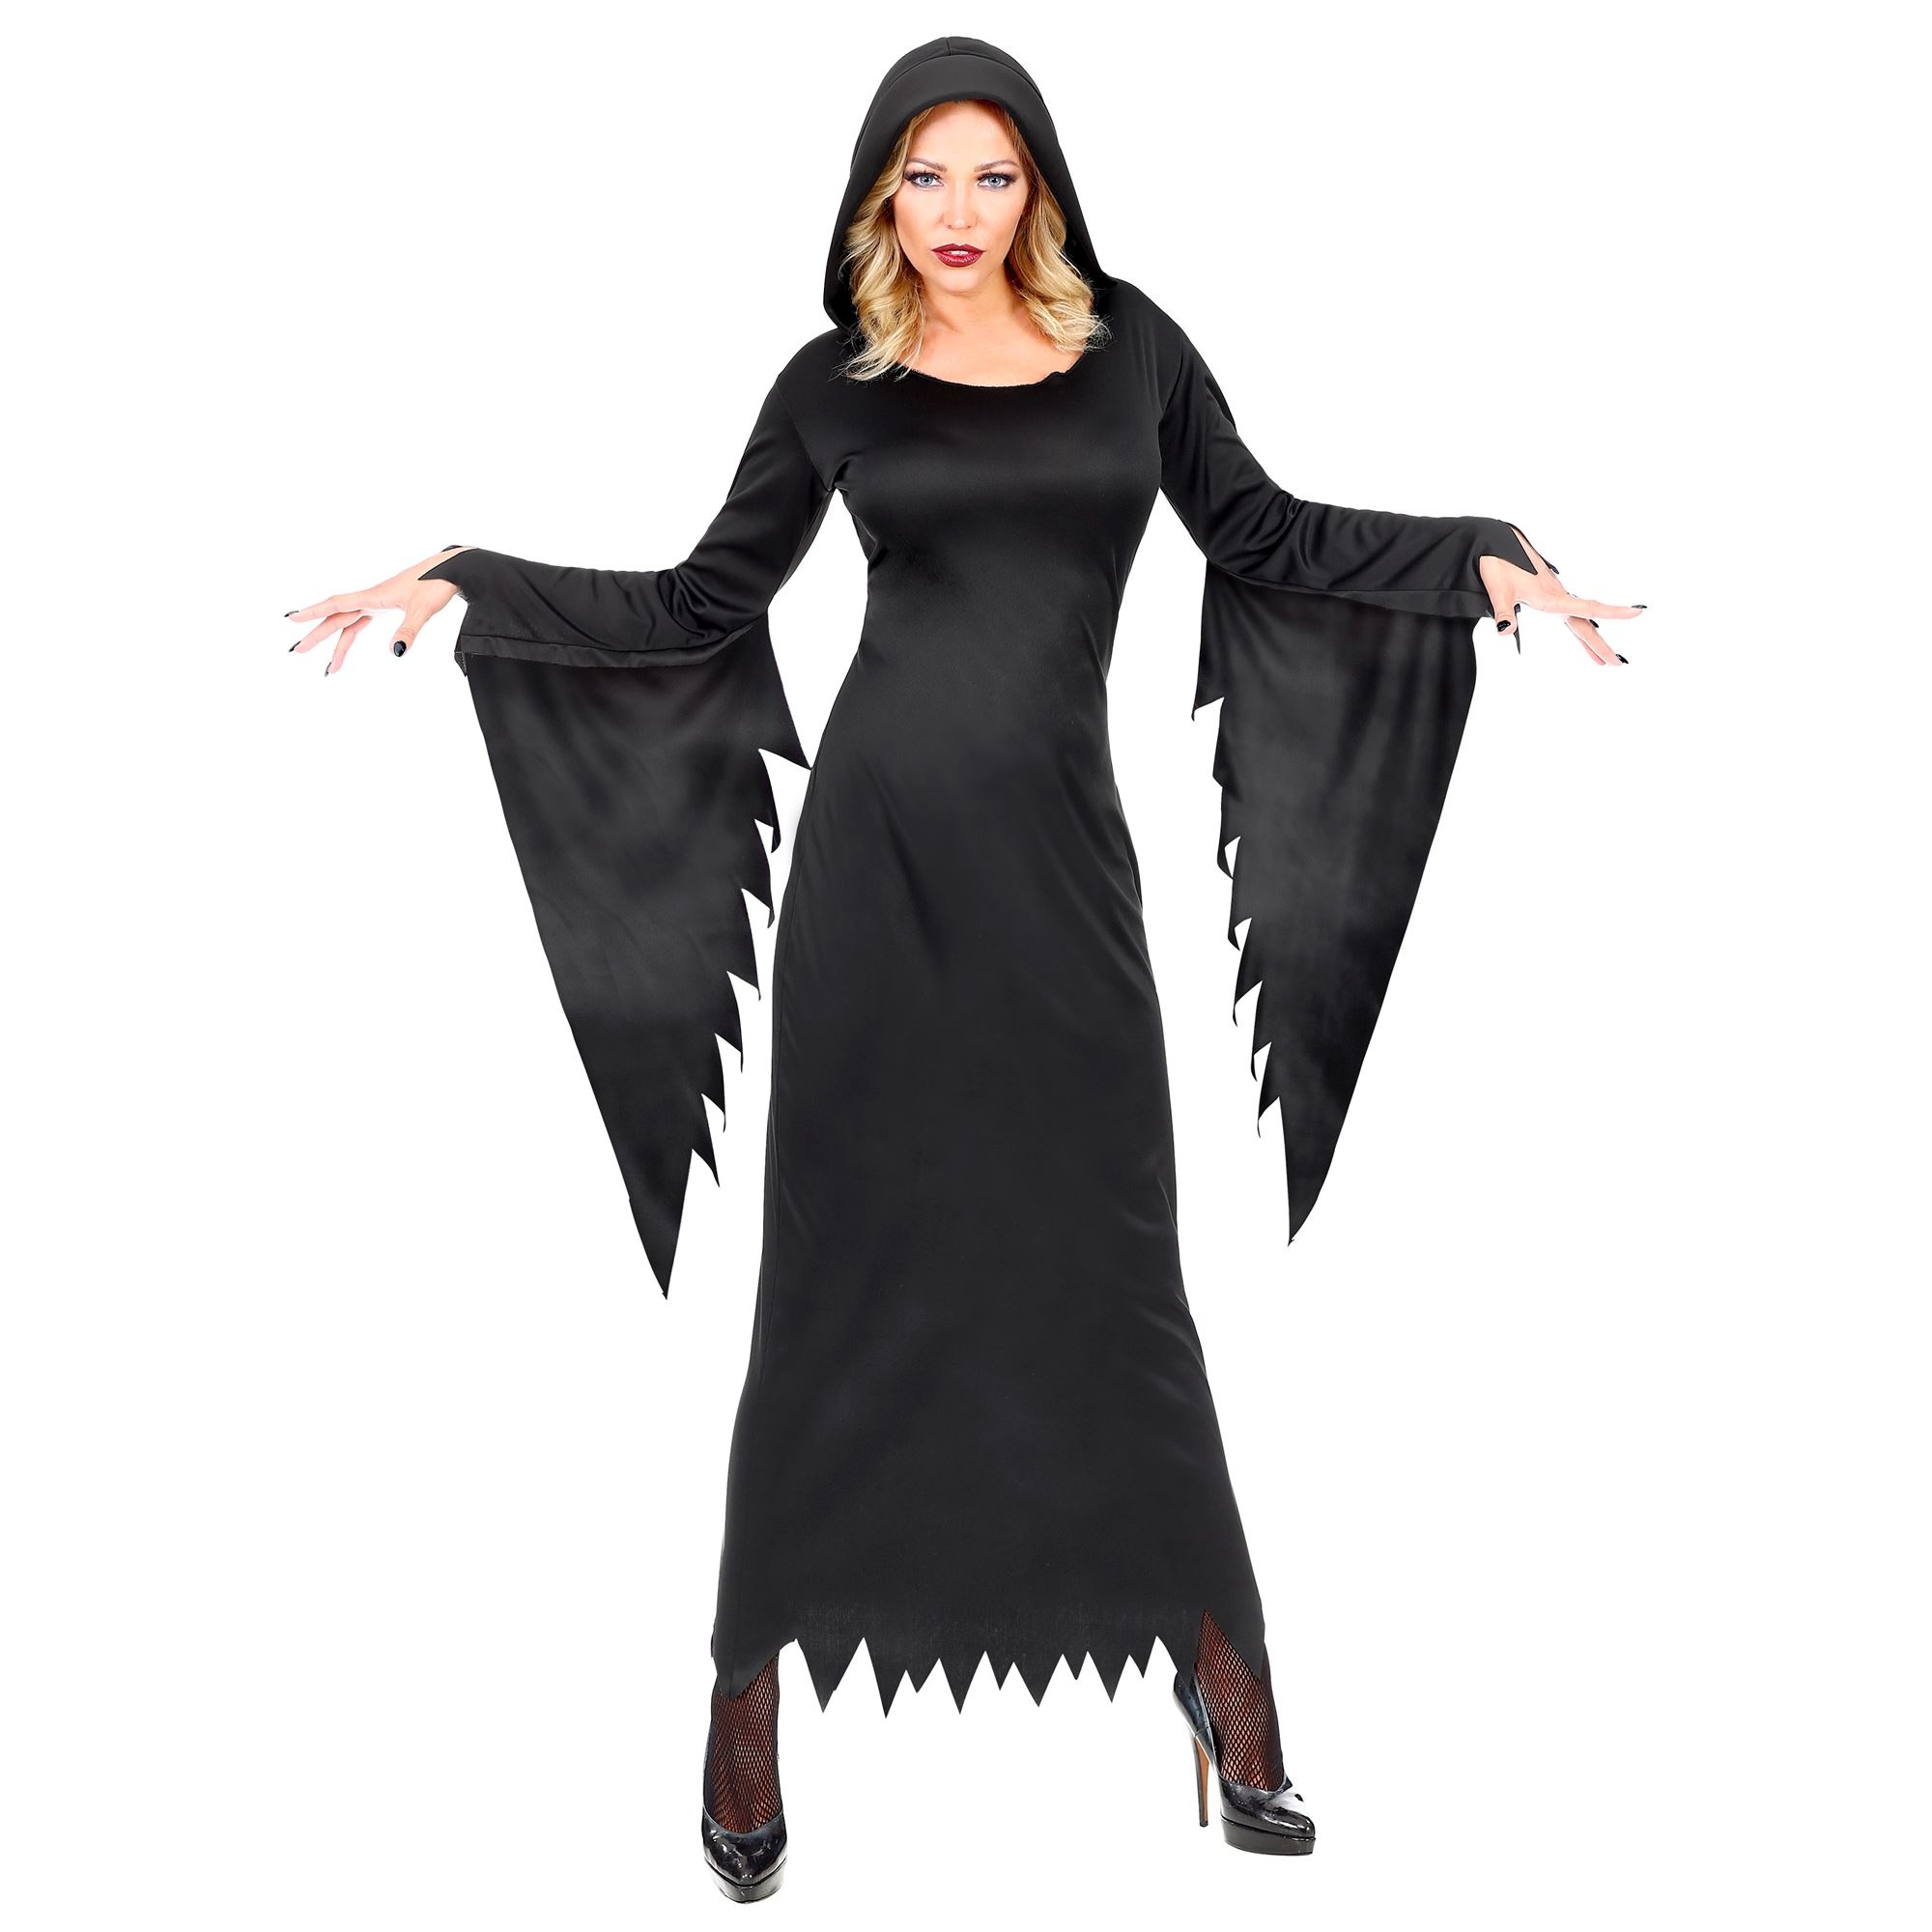 Widmann - Heks & Spider Lady & Voodoo & Duistere Religie Kostuum - Gotische Voodoo Koningin Duistere Zaken - Vrouw - zwart - Medium - Halloween - Verkleedkleding